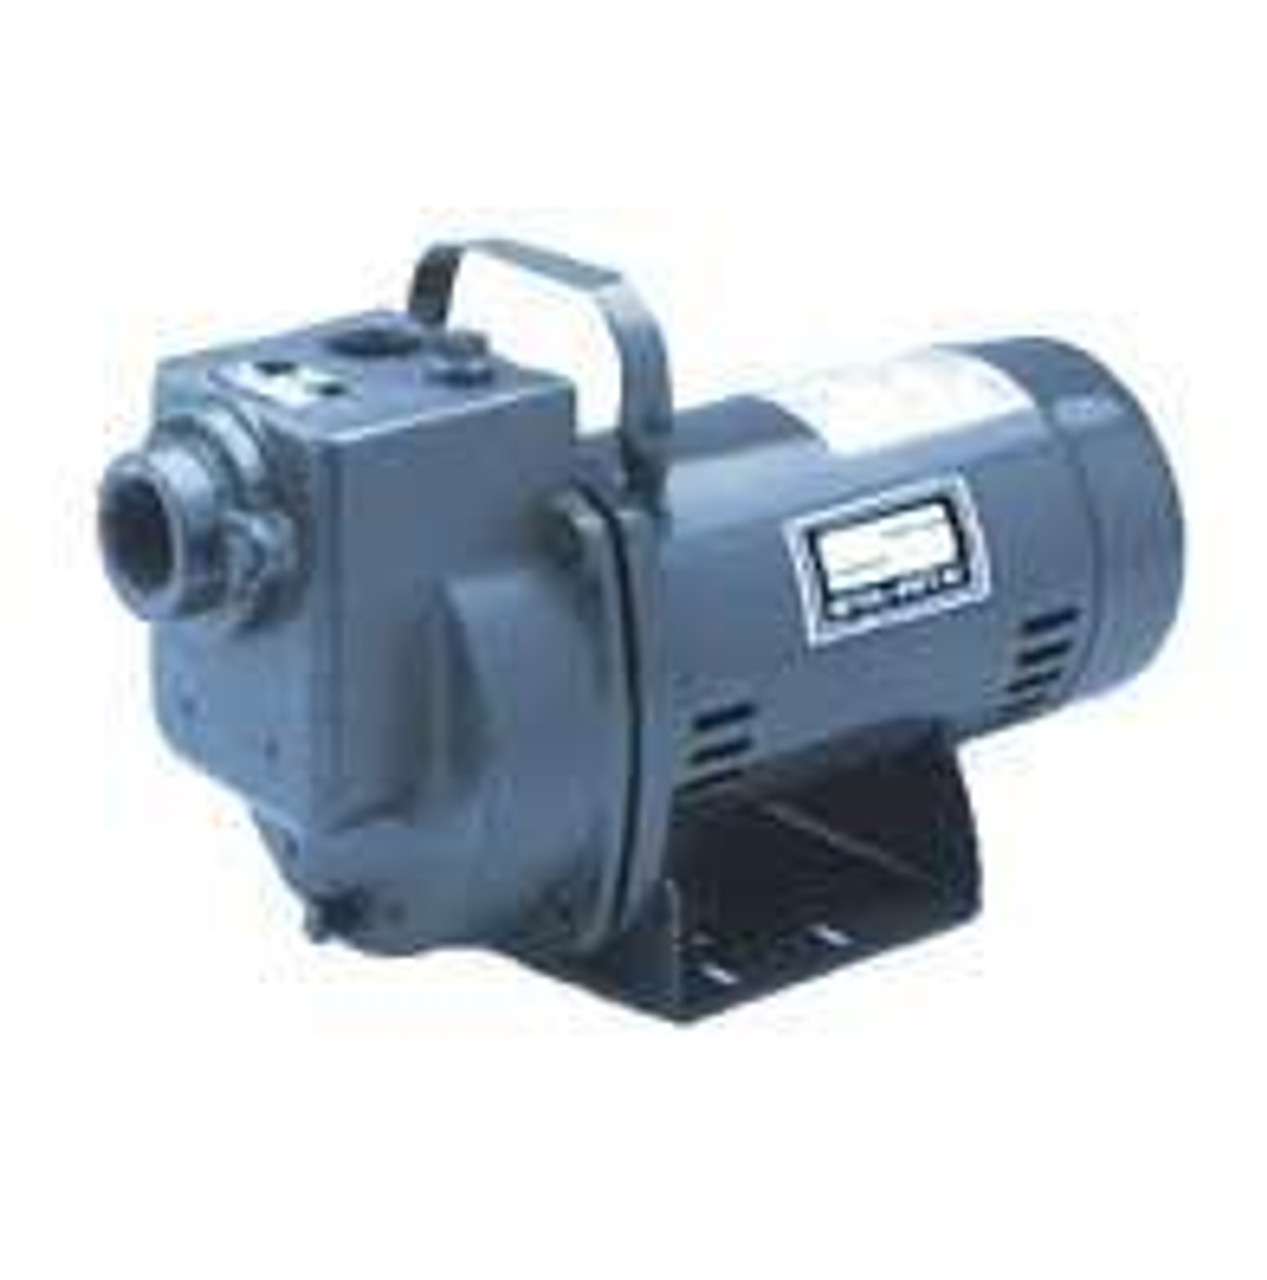  Sta-Rite DPC 1/2HP Self-priming centrifugal pump 